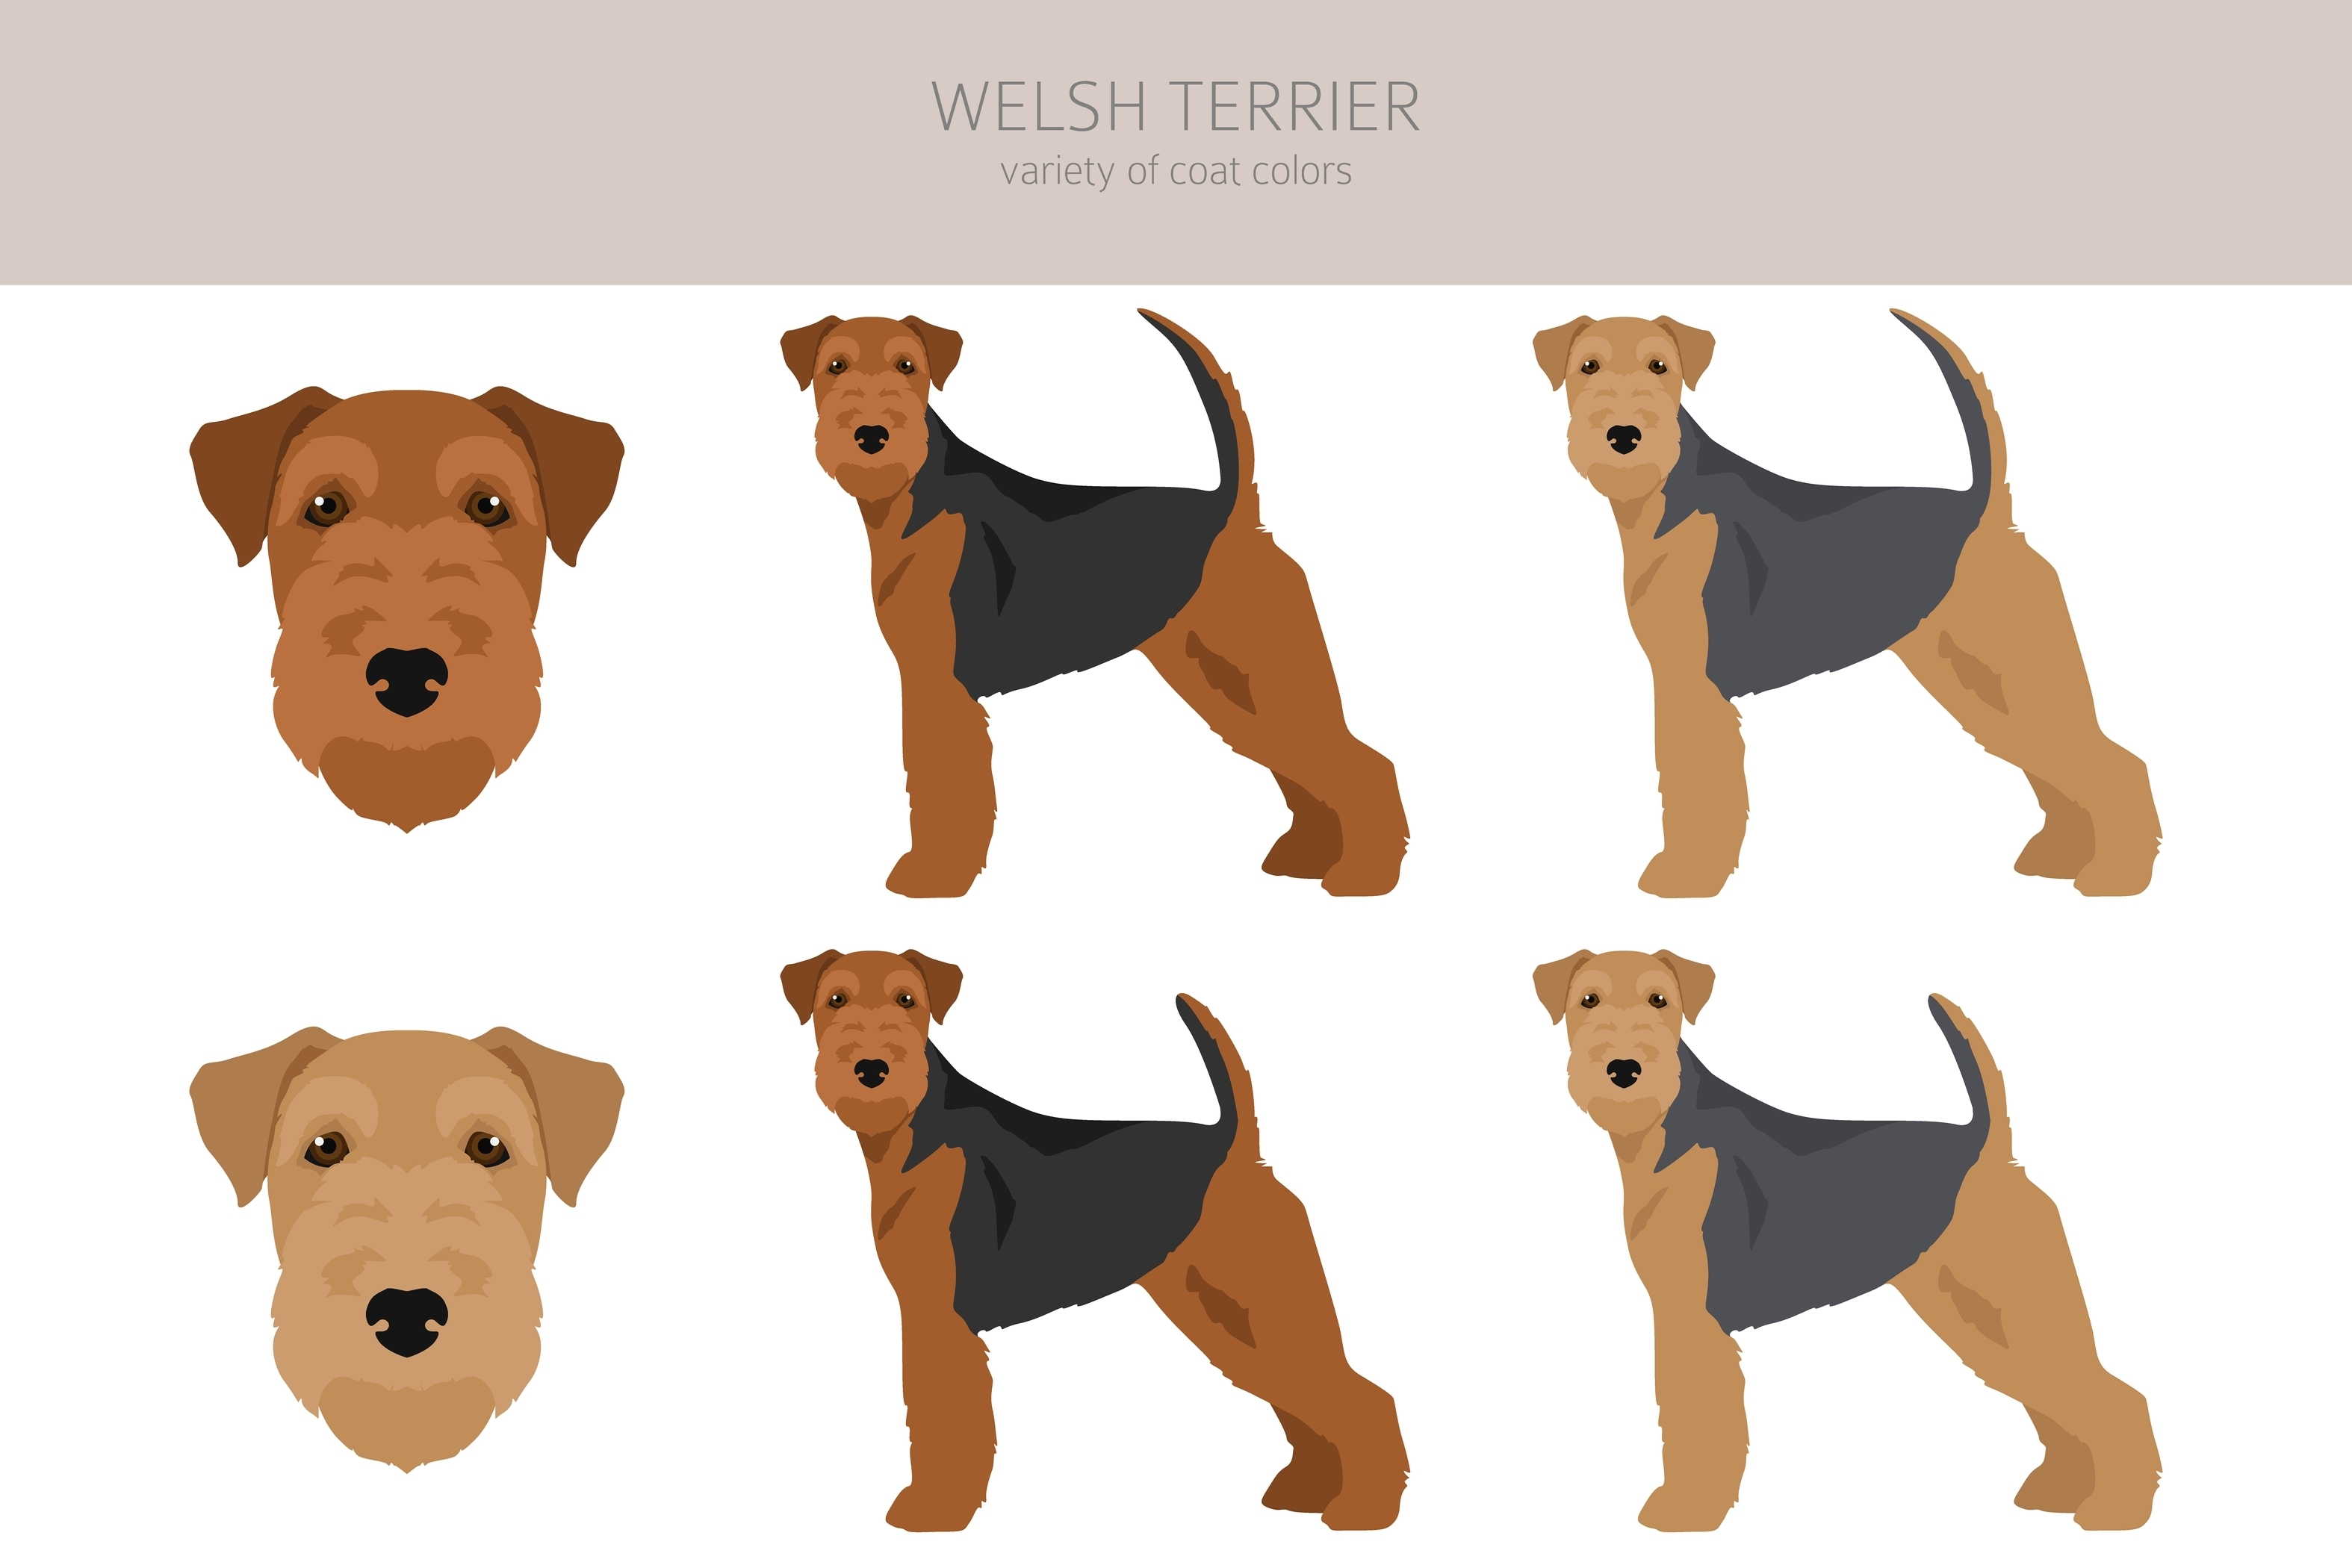 An infographic of the Welsh Terrier's coat varieties